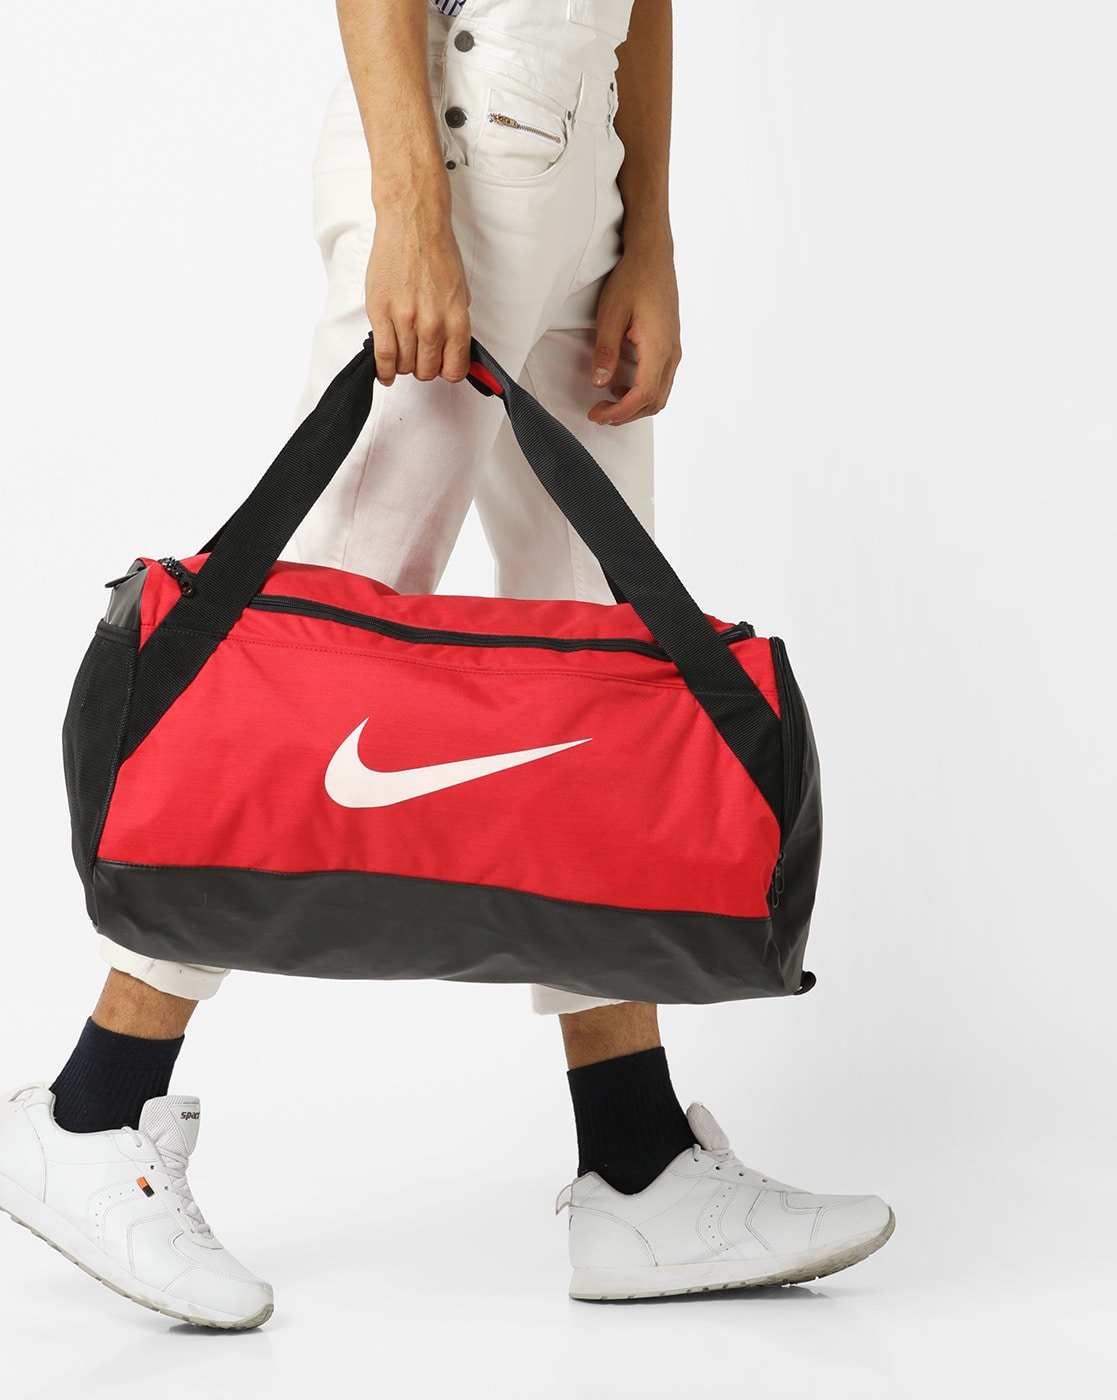 Buy > nike sneaker travel bag > in stock